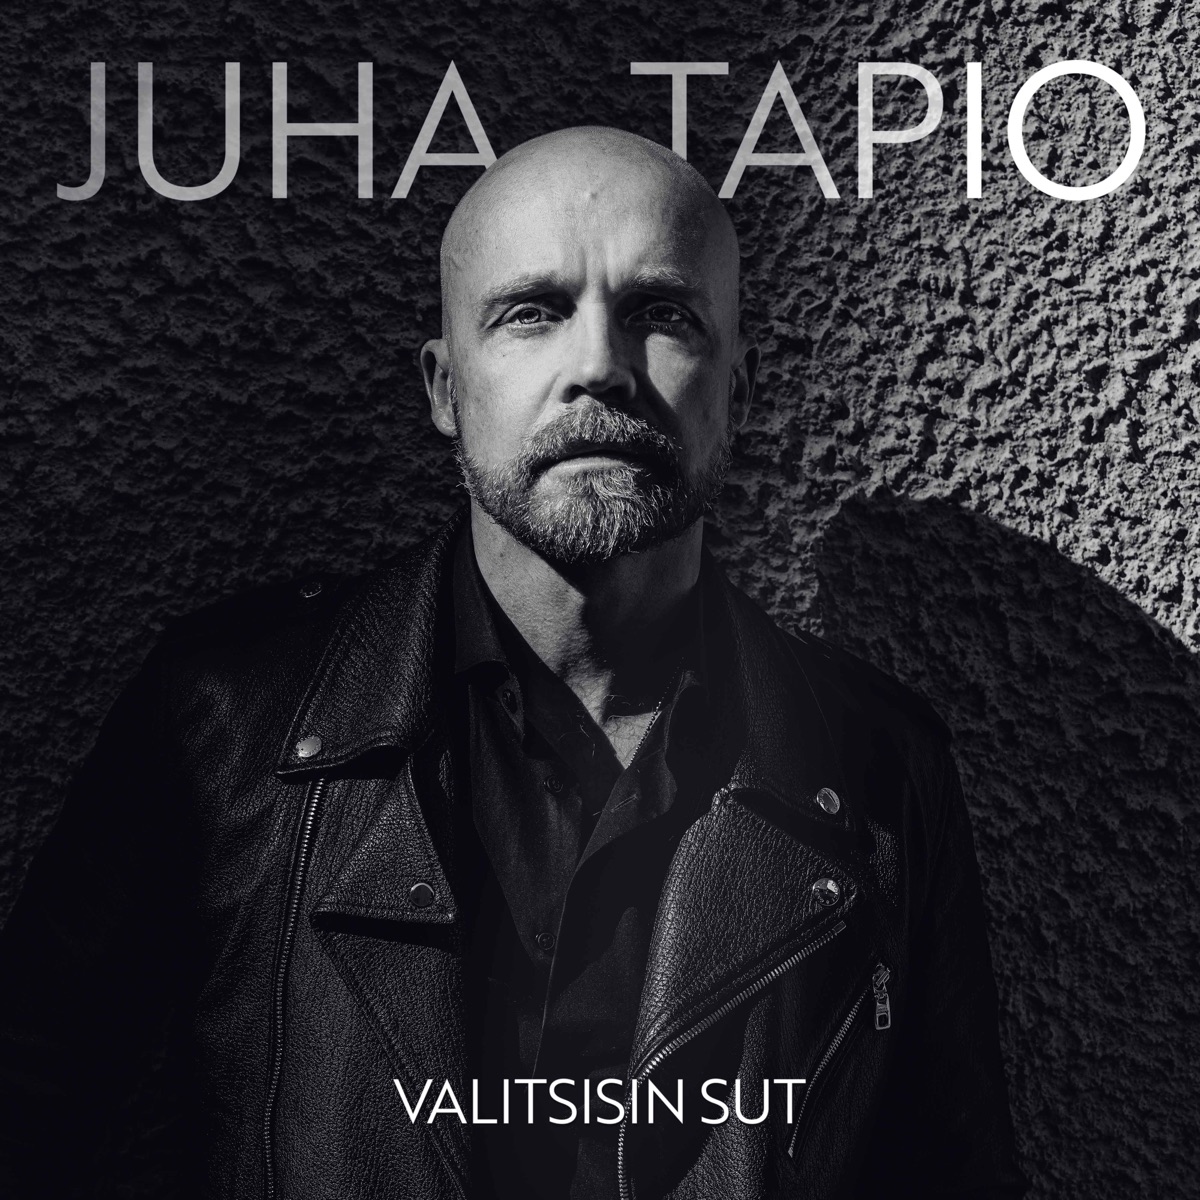 Vain elämää - EP by Juha Tapio on Apple Music